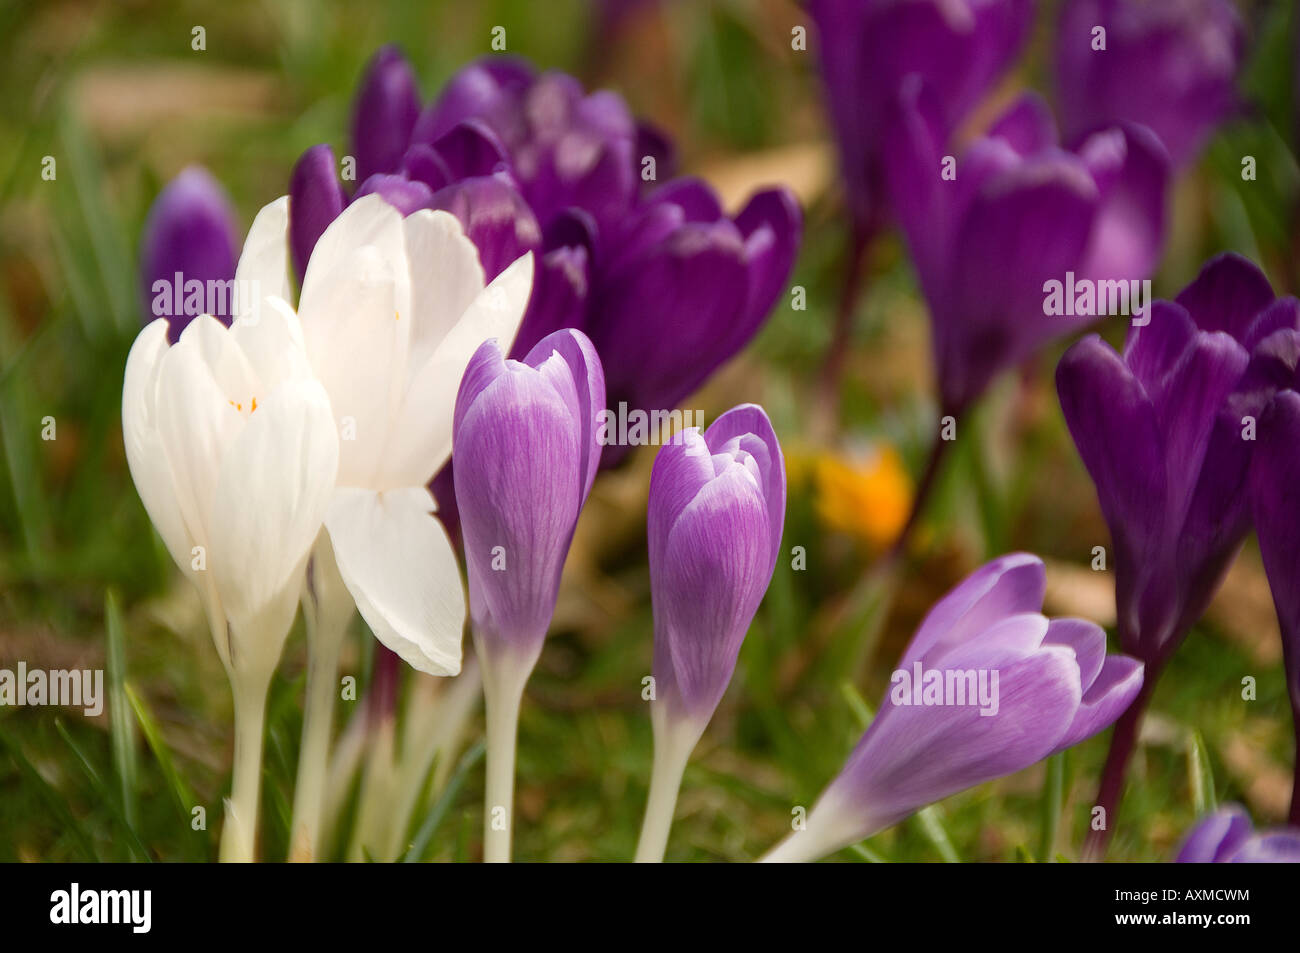 Crocus violet et blanc crocus fleurs fleurs fleurir dans un jardin au printemps Angleterre Royaume-Uni GB Grande-Bretagne Banque D'Images